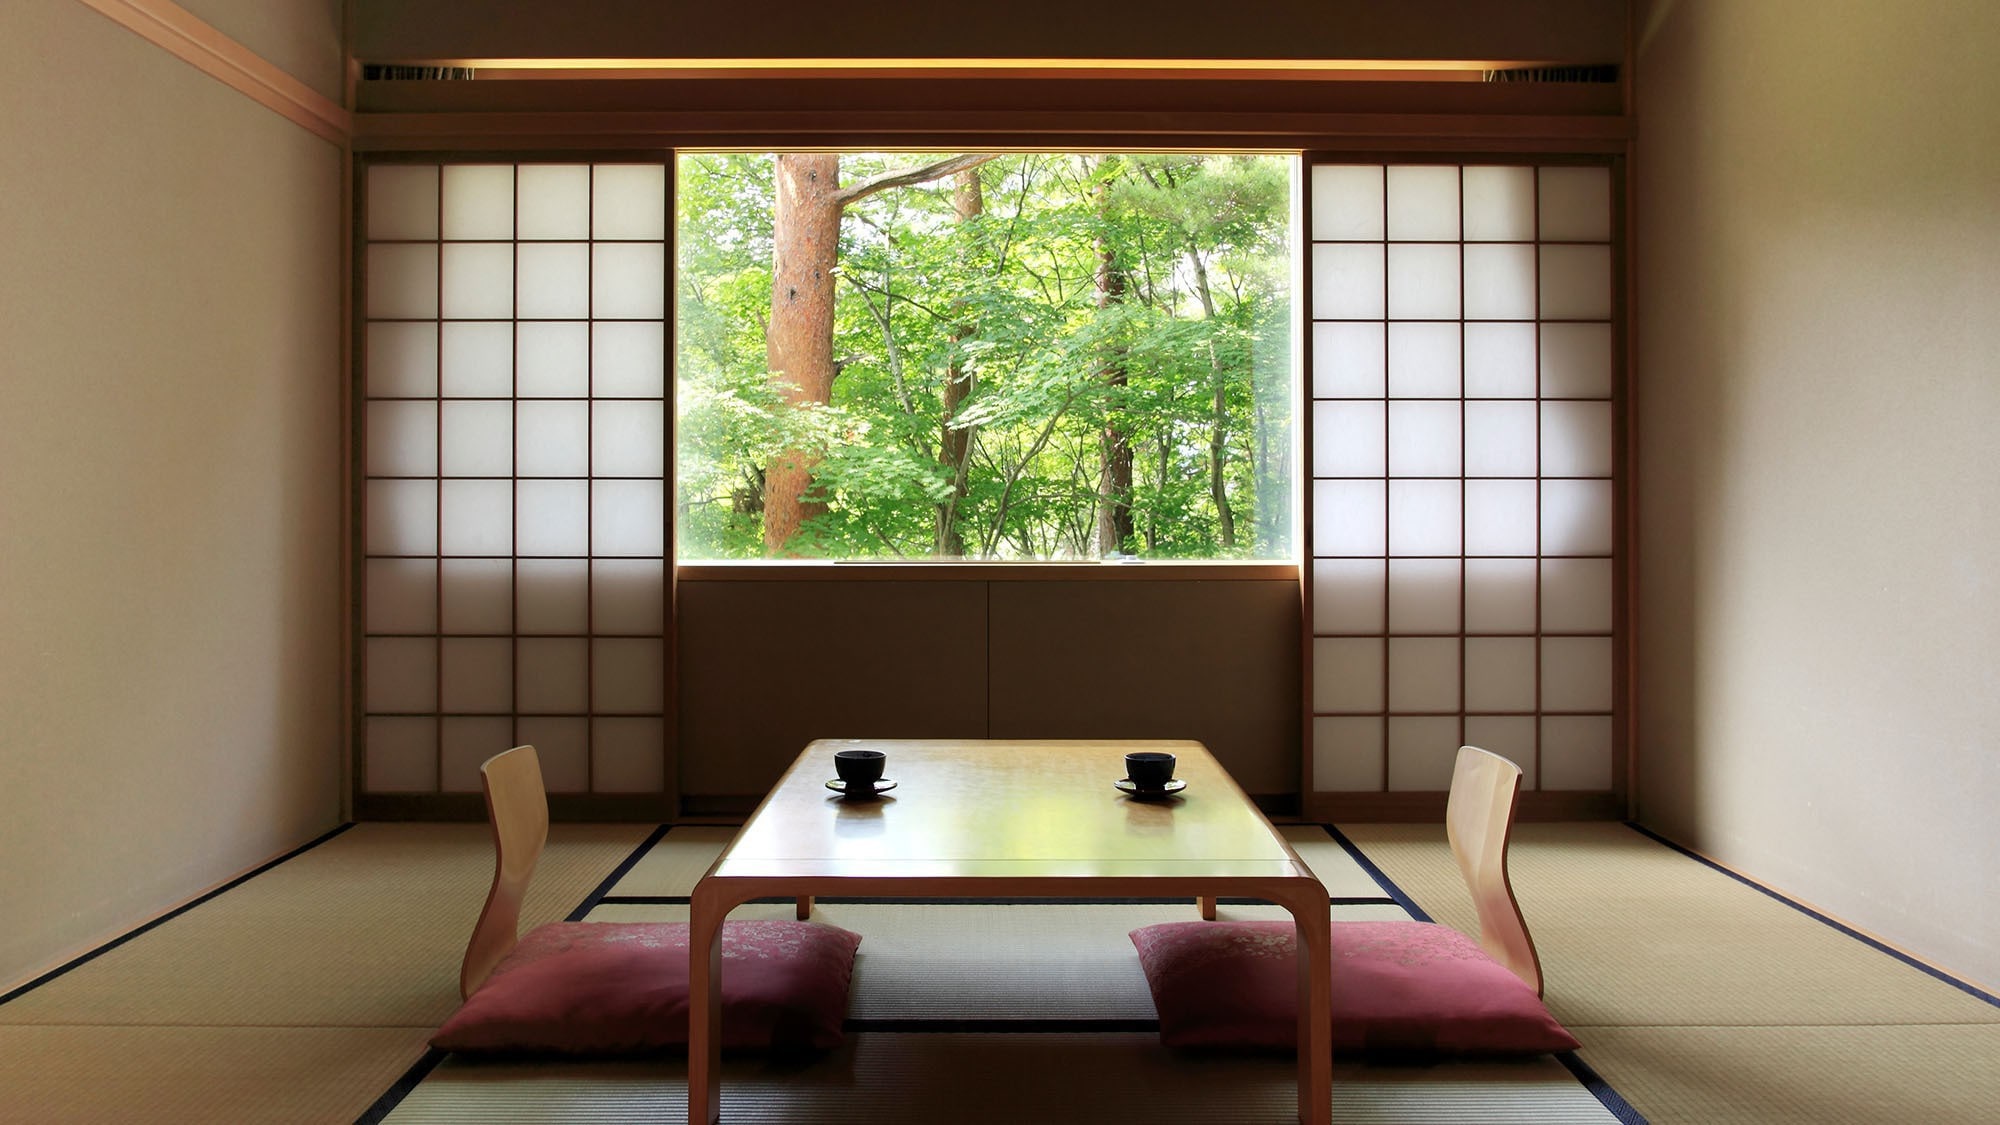 [ห้องสไตล์ญี่ปุ่น] 12 เสื่อทาทามิ ห้องนี้เหมาะสำหรับครอบครัวและสามารถรองรับผู้คนจำนวนมากได้